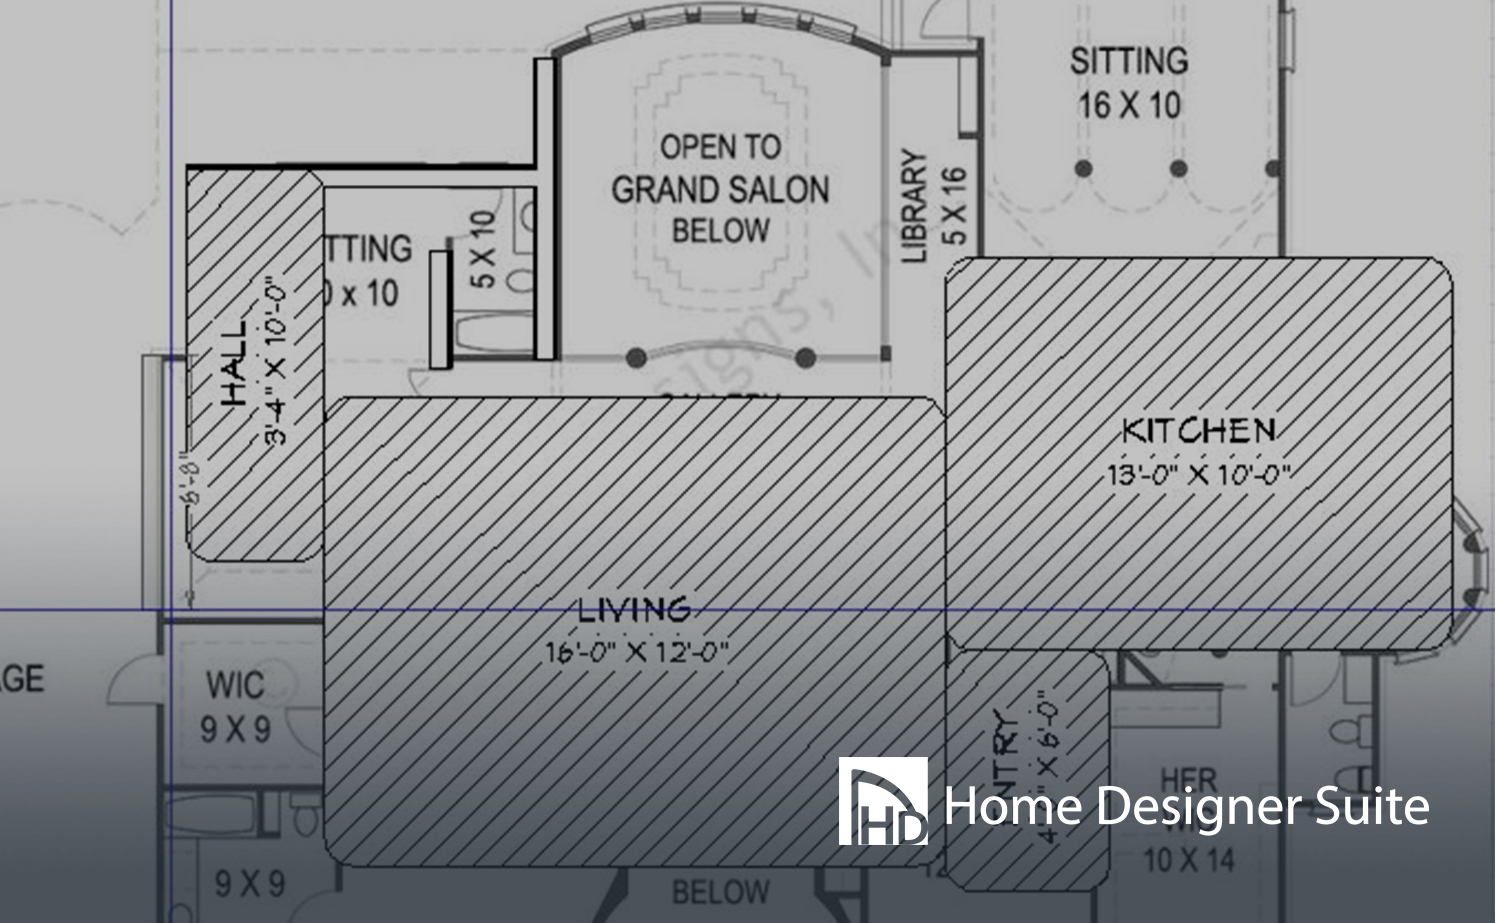 The best home design software: Home Designer Suite